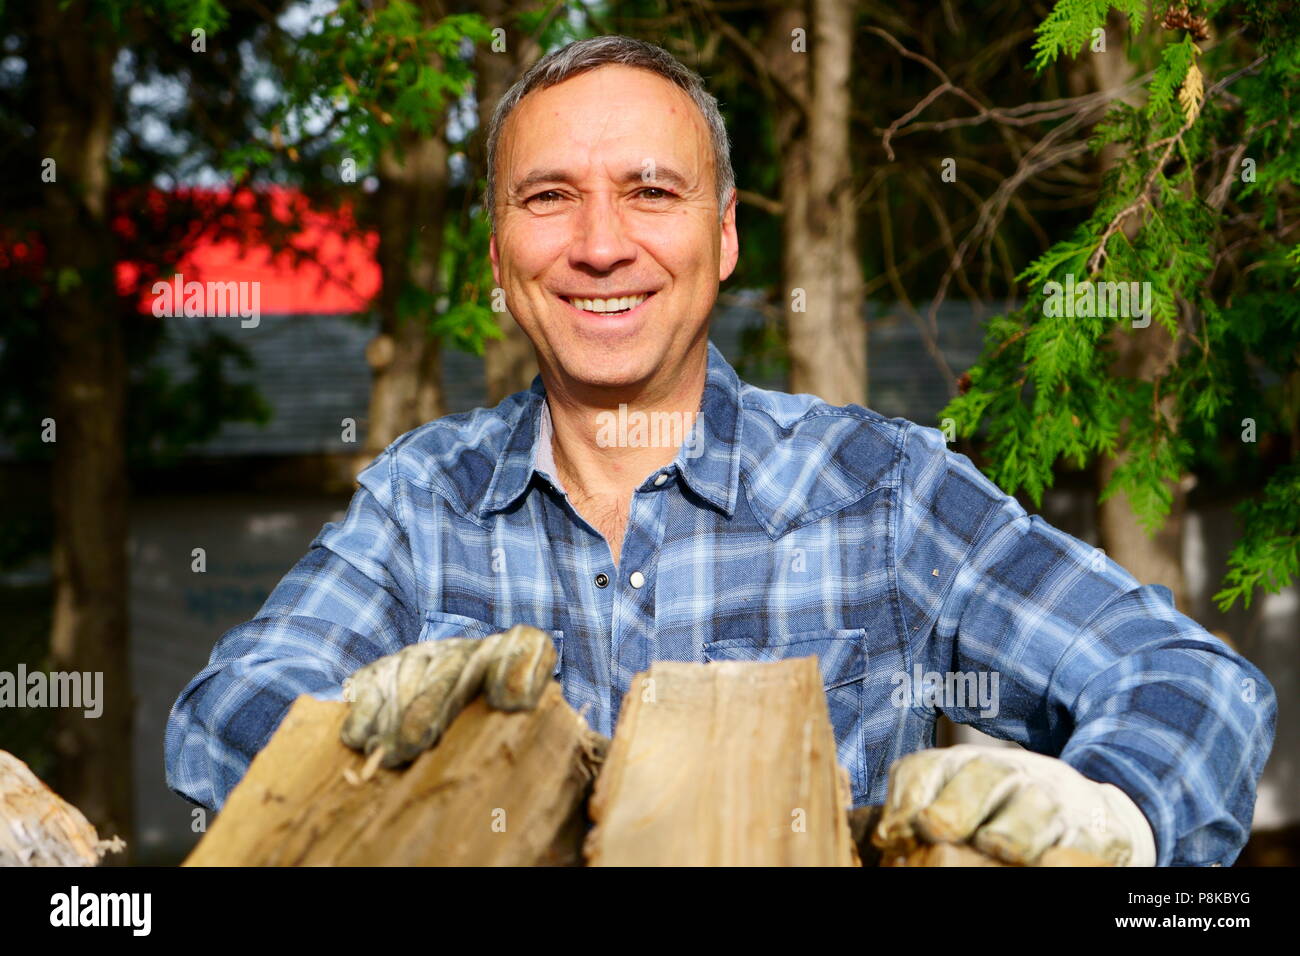 Un hombre de 50 años de edad caucásico vistiendo una camisa azul está sonriendo a nosotros mientras hinca su madera para la temporada de invierno, a fin de calentar la casa. Foto de stock